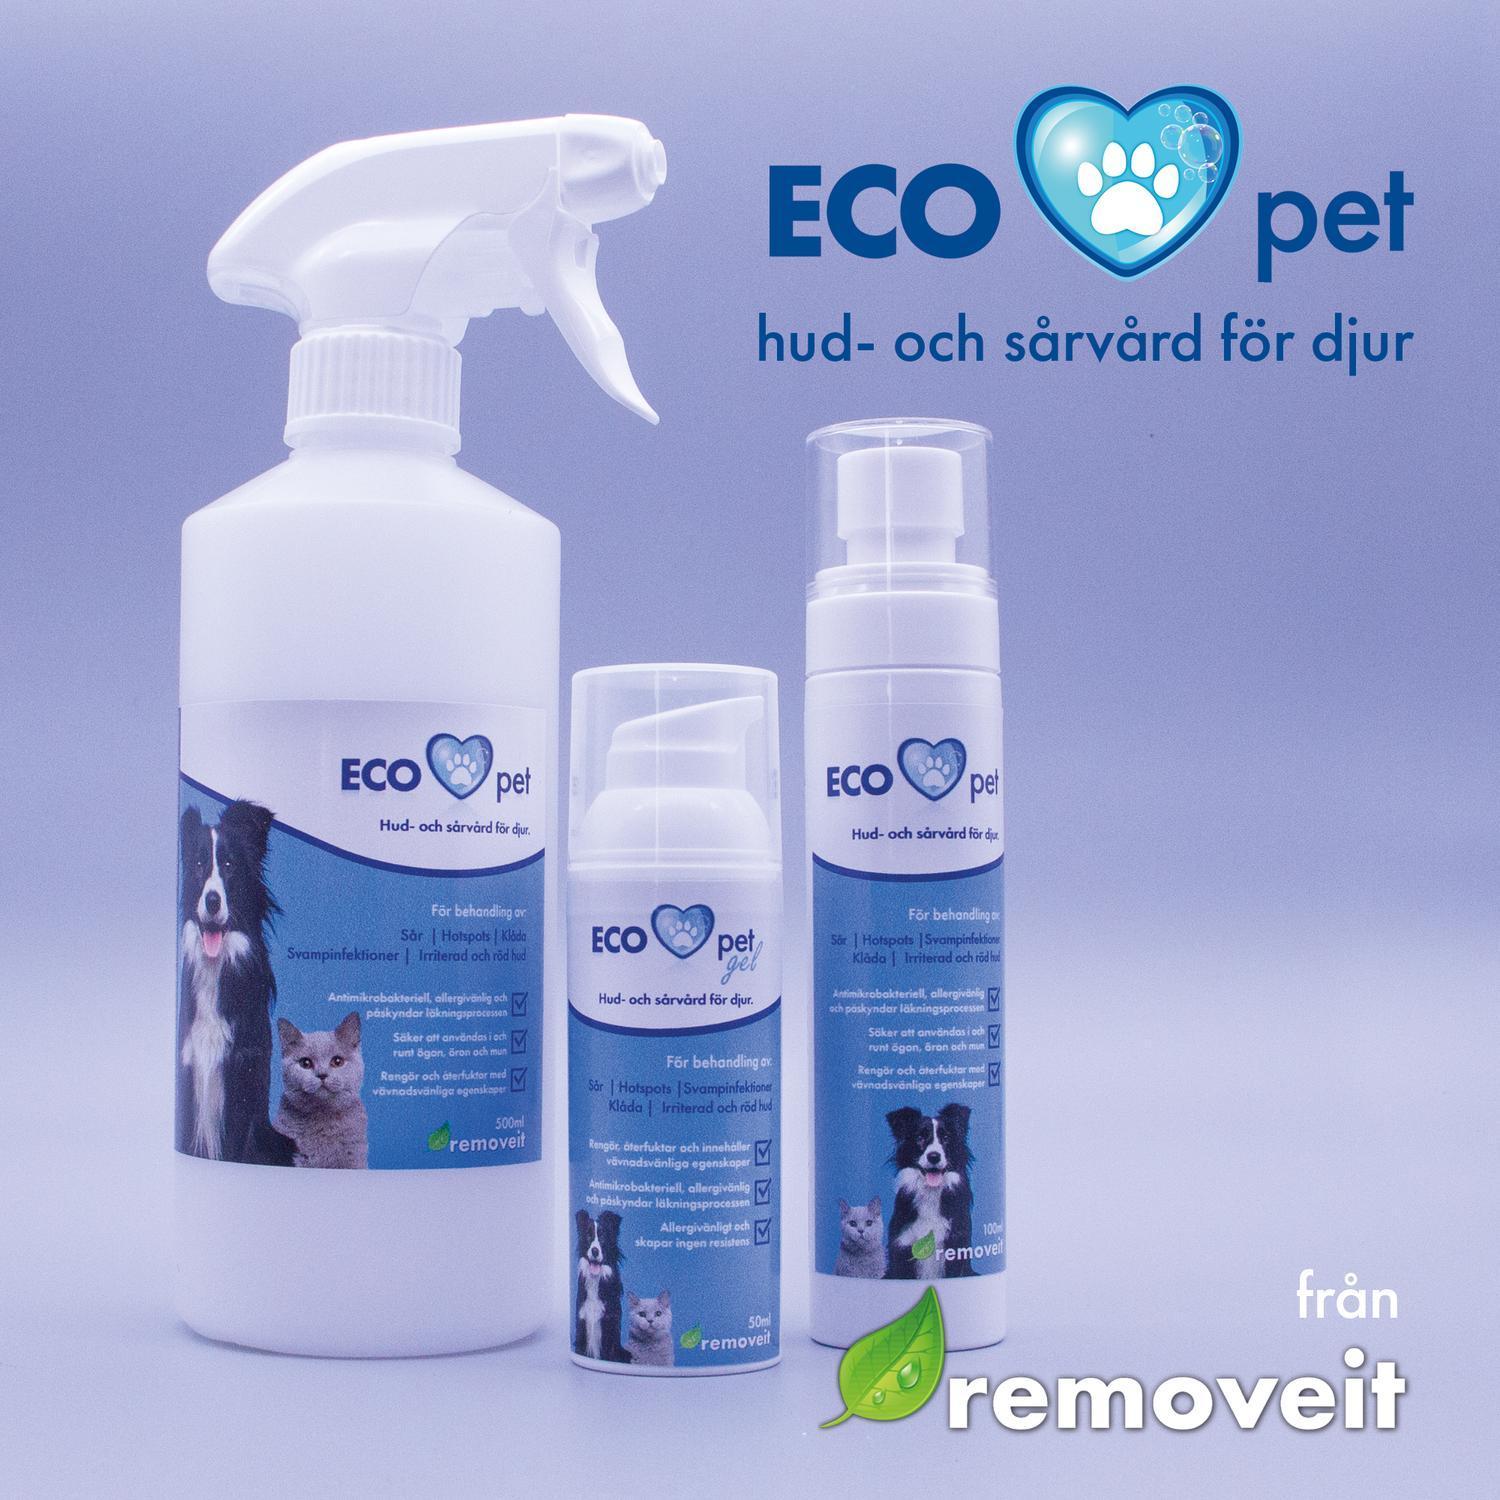 ECO pet hud- och sårvård - 500ml